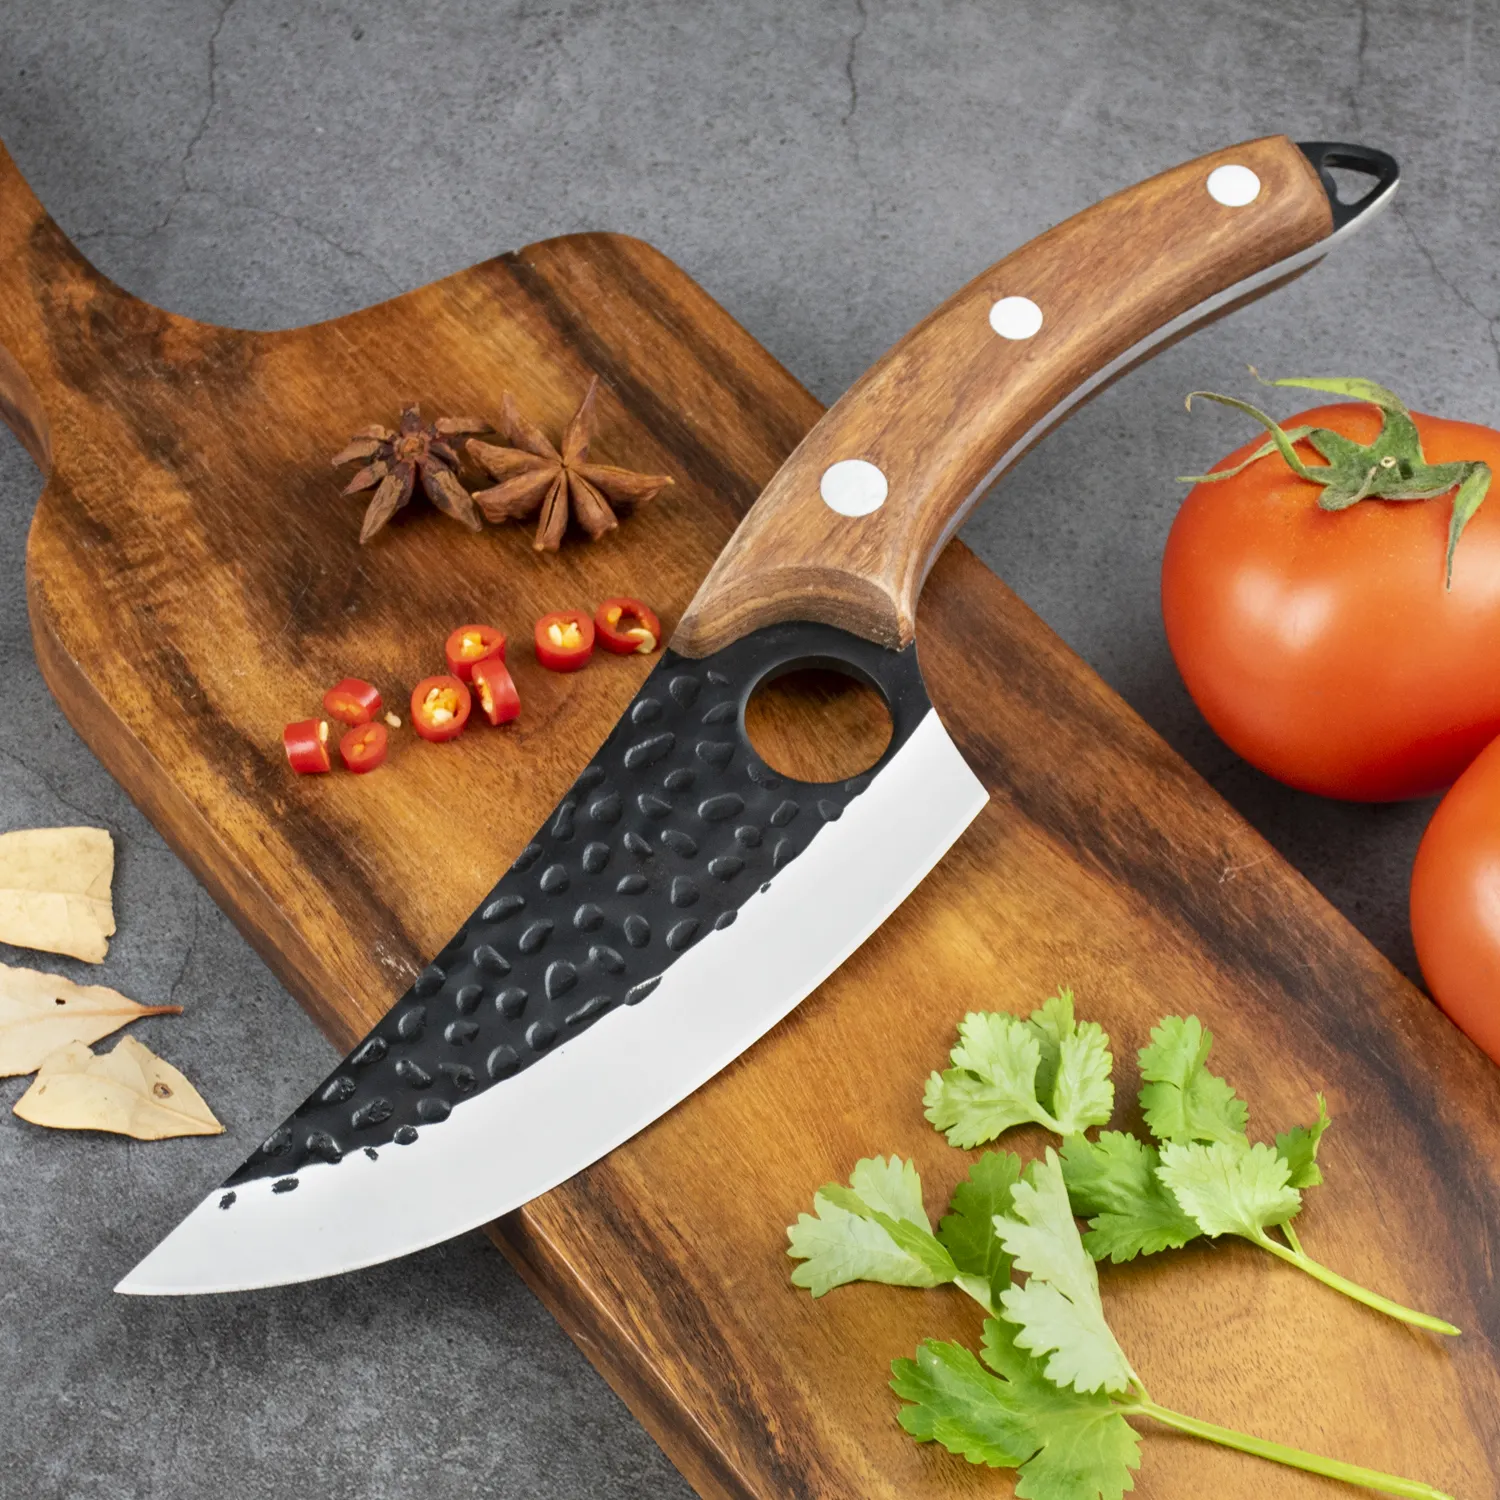 Yüksek kalite 6 inç tam Tang kavisli kemiksi saplı bıçak kesim bıçağı el yapımı dövme karbon çelik kasap bıçağı